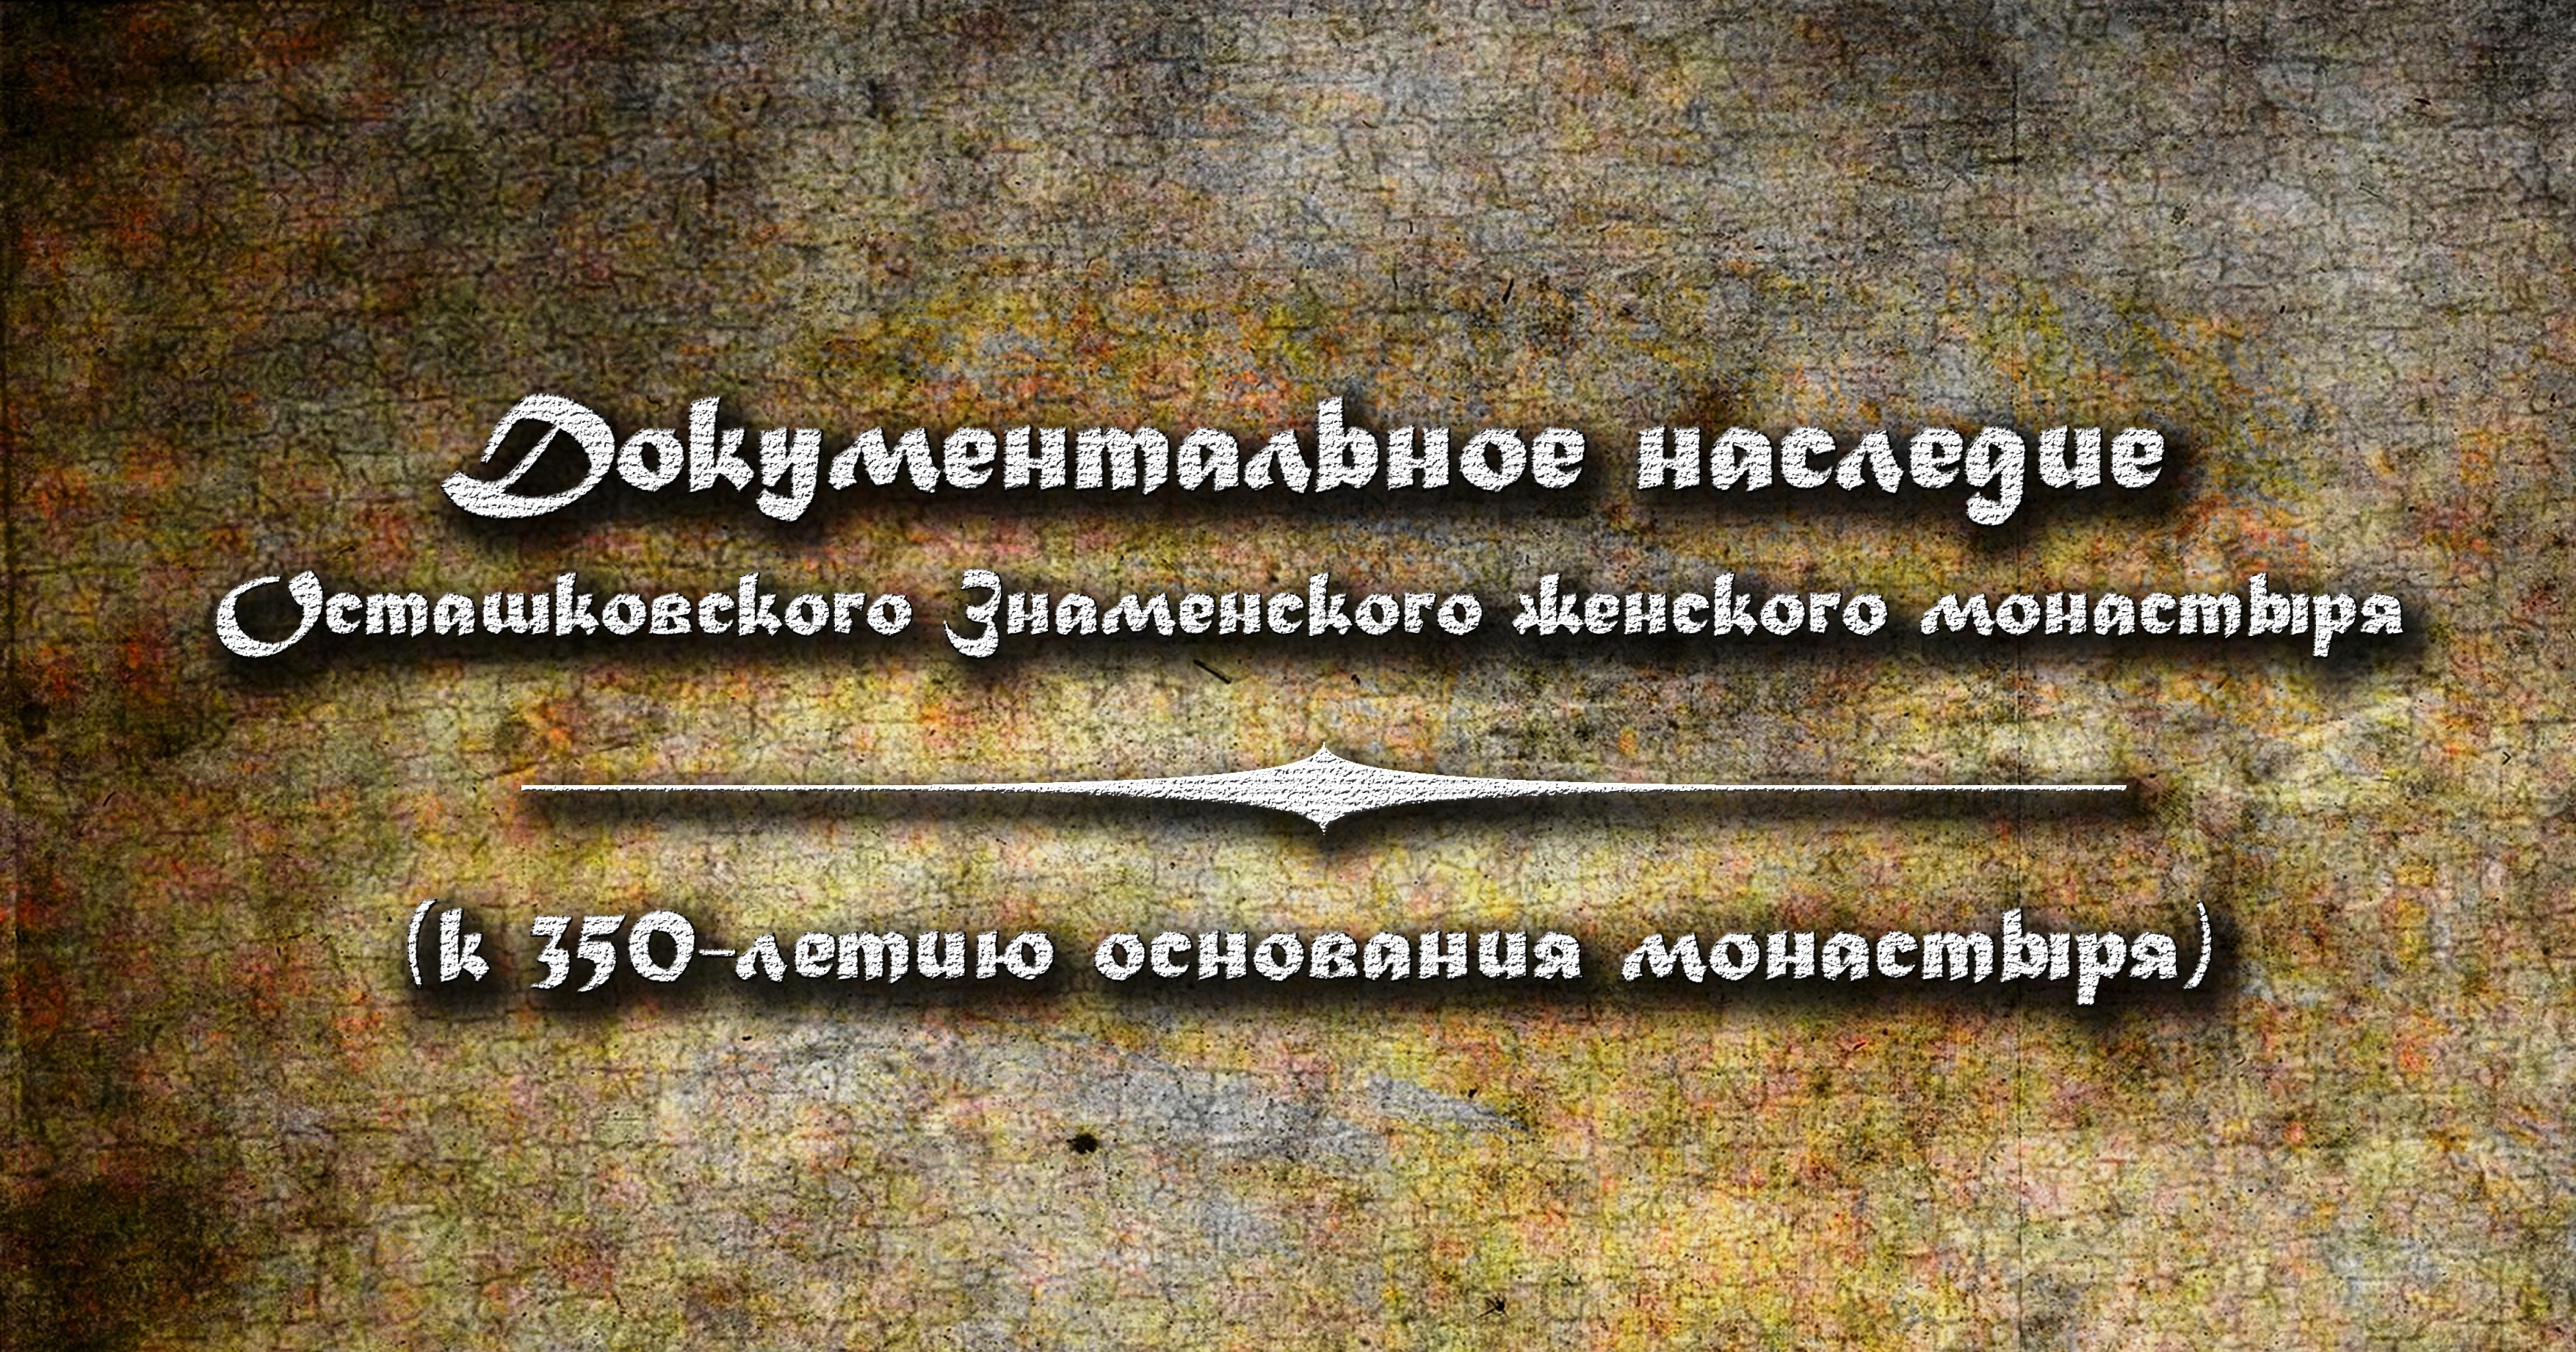 Документальное наследие Осташковского Знаменского женского монастыря